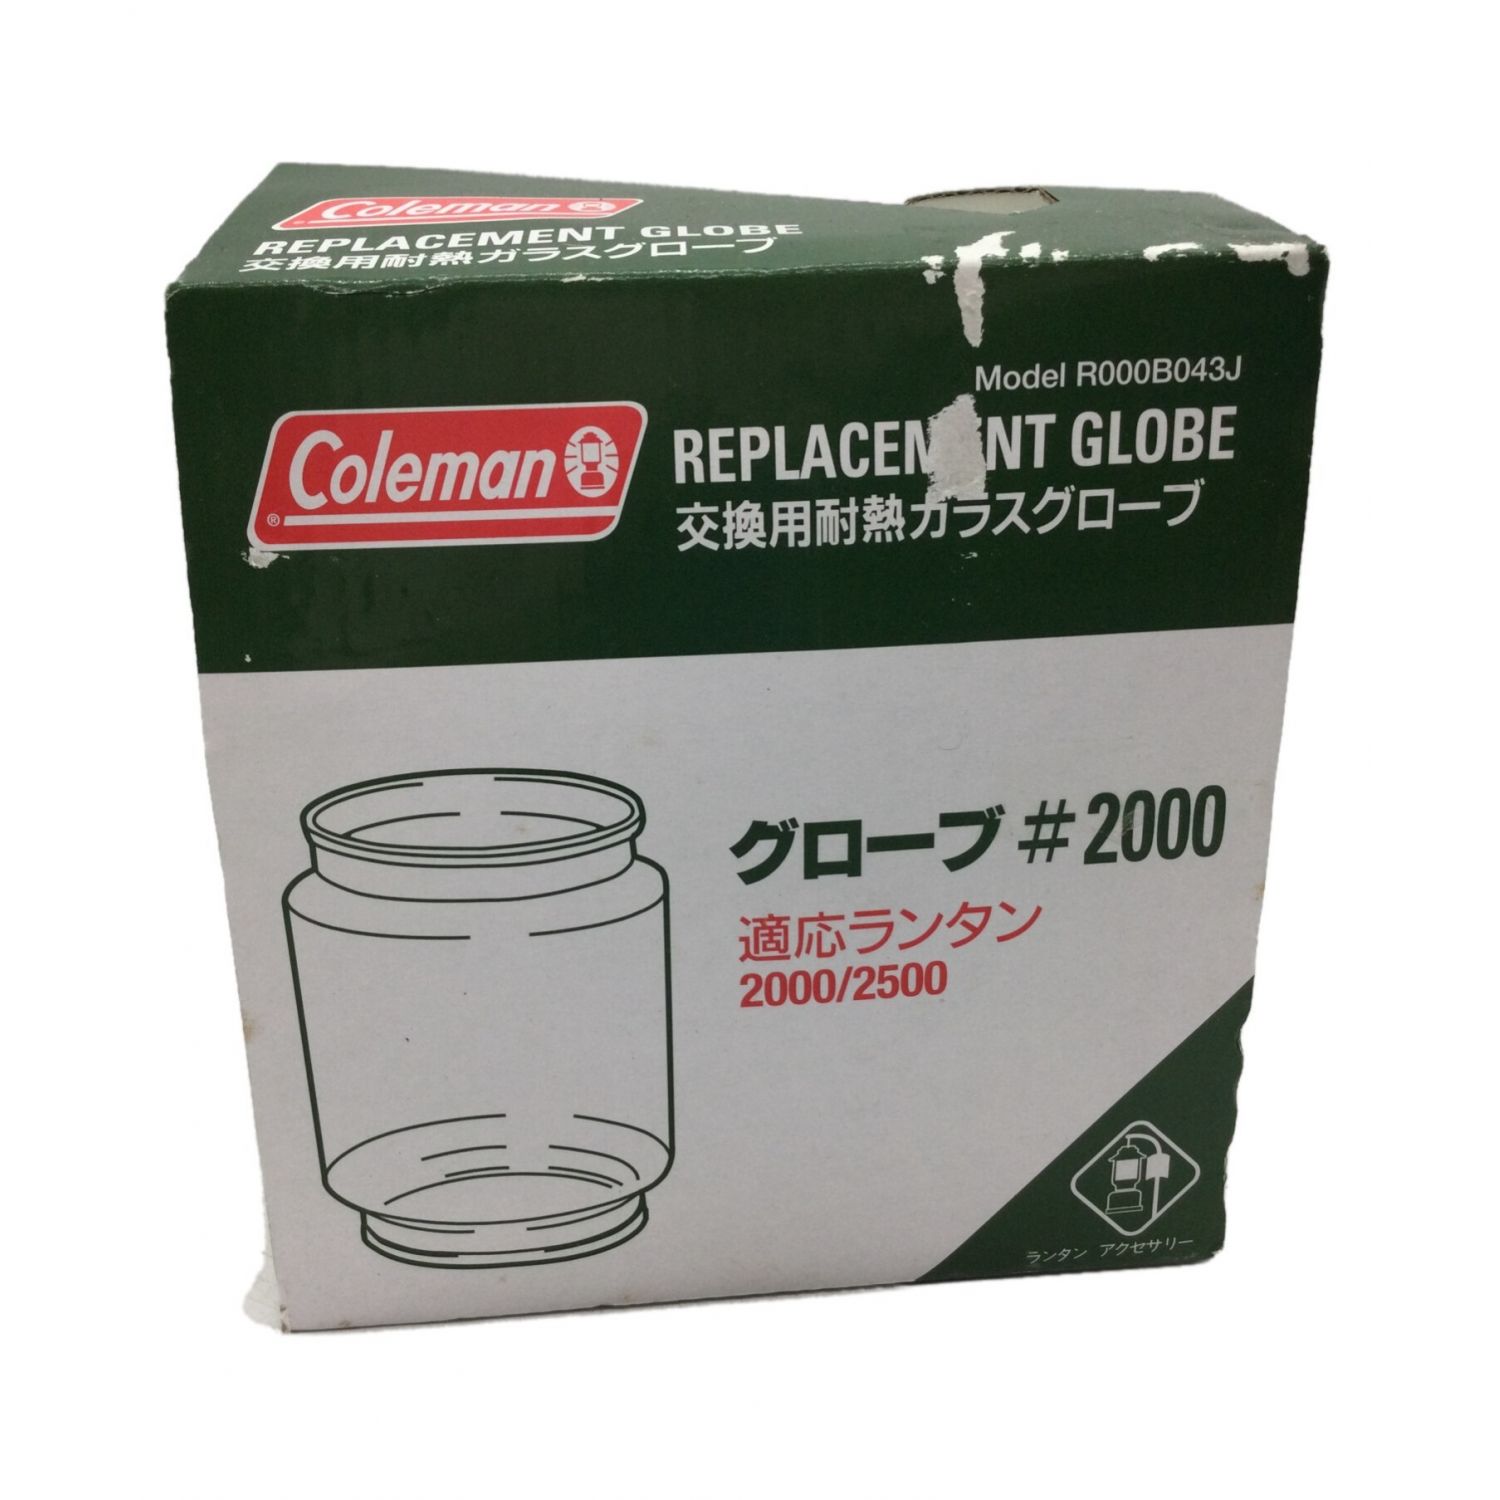 Coleman (コールマン) ランタンアクセサリー 交換用耐熱ガラスグローブ 適応ランタン2000/2500 グローブ#2000  R000B043J｜トレファクONLINE